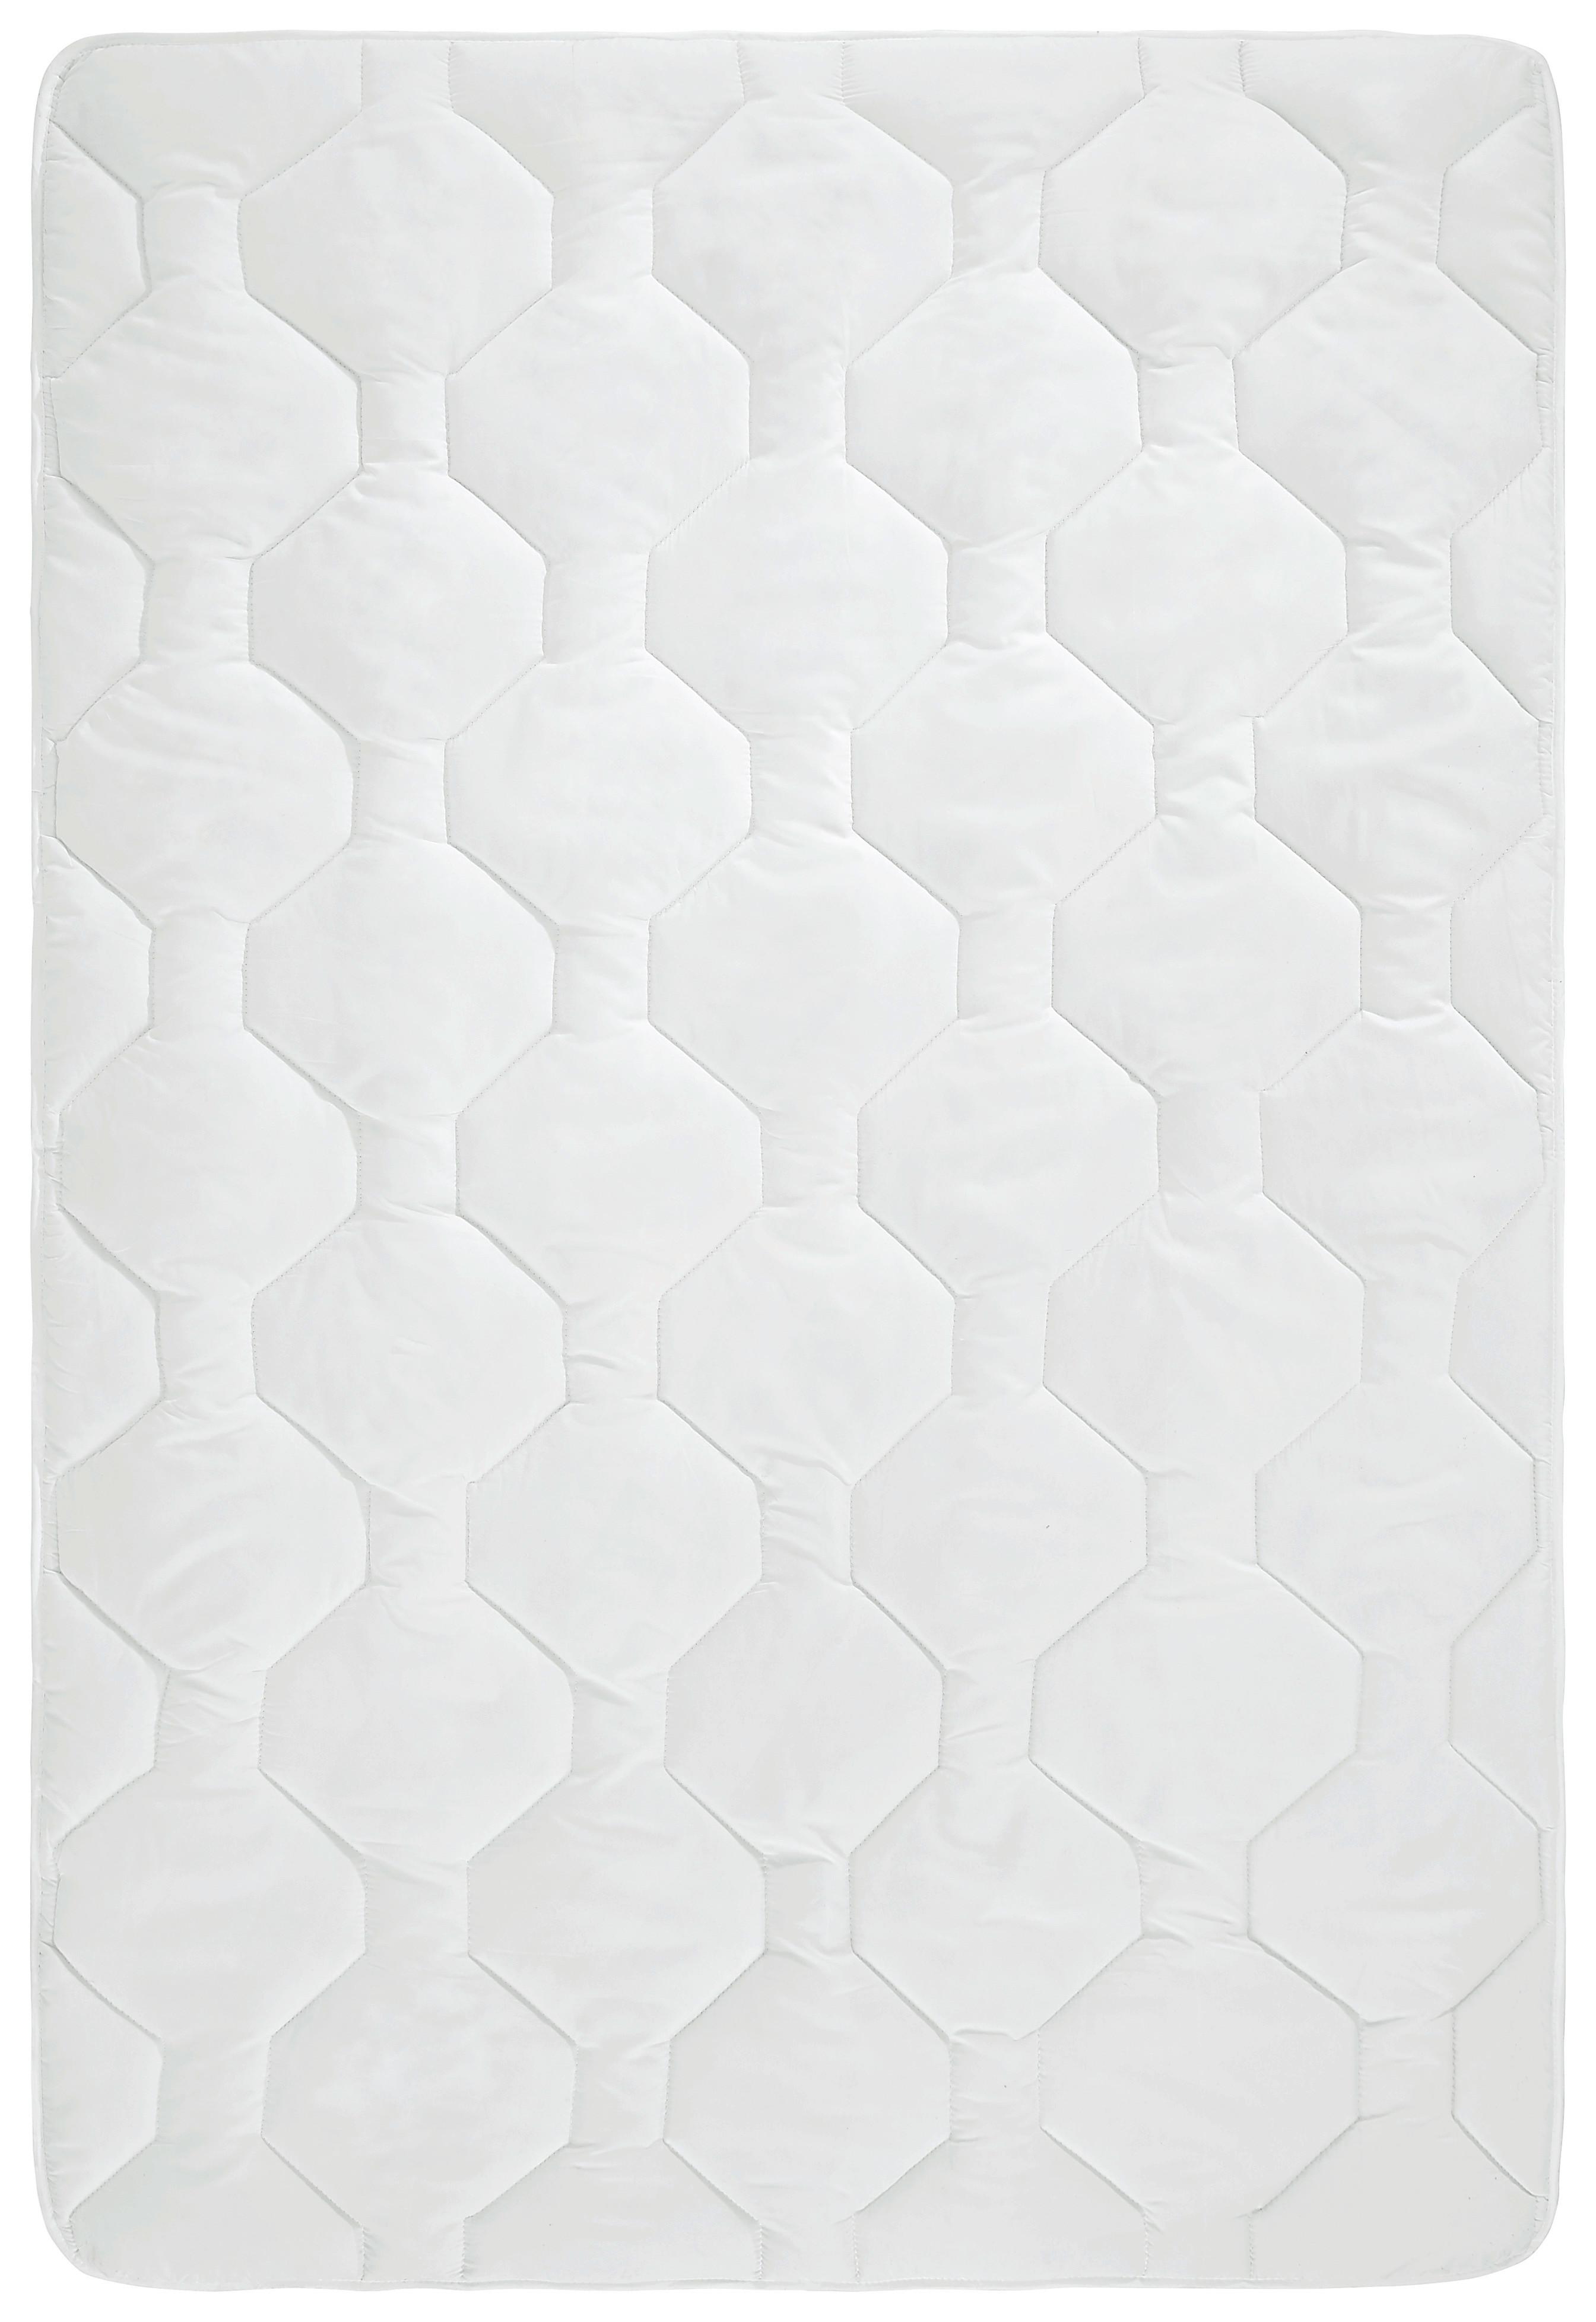 Celoroční Přikrývka Aloe Vera, 135-140/200cm - bílá, Konvenční, textil (135-140/200cm) - Nadana